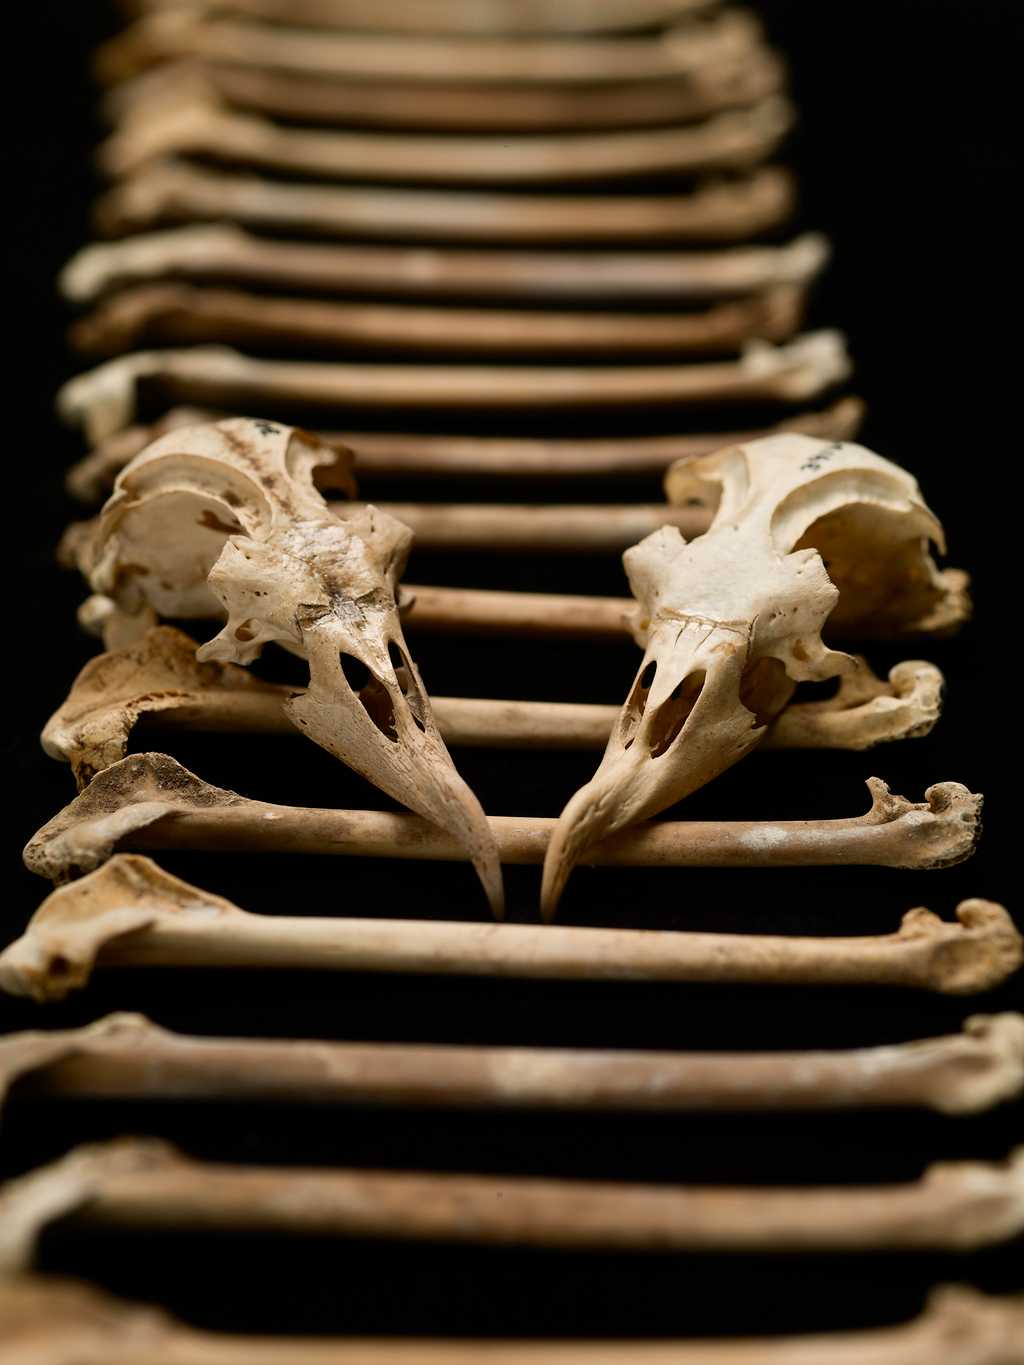 Des chercheurs ont récolté 17.000 ossements de pétrels des Hawaï et ont étudié leur composition chimique. Ils ont ainsi pu déterminer l'évolution du régime alimentaire de ces oiseaux marins sur 4.000 ans d'histoire. © Brittany Hance